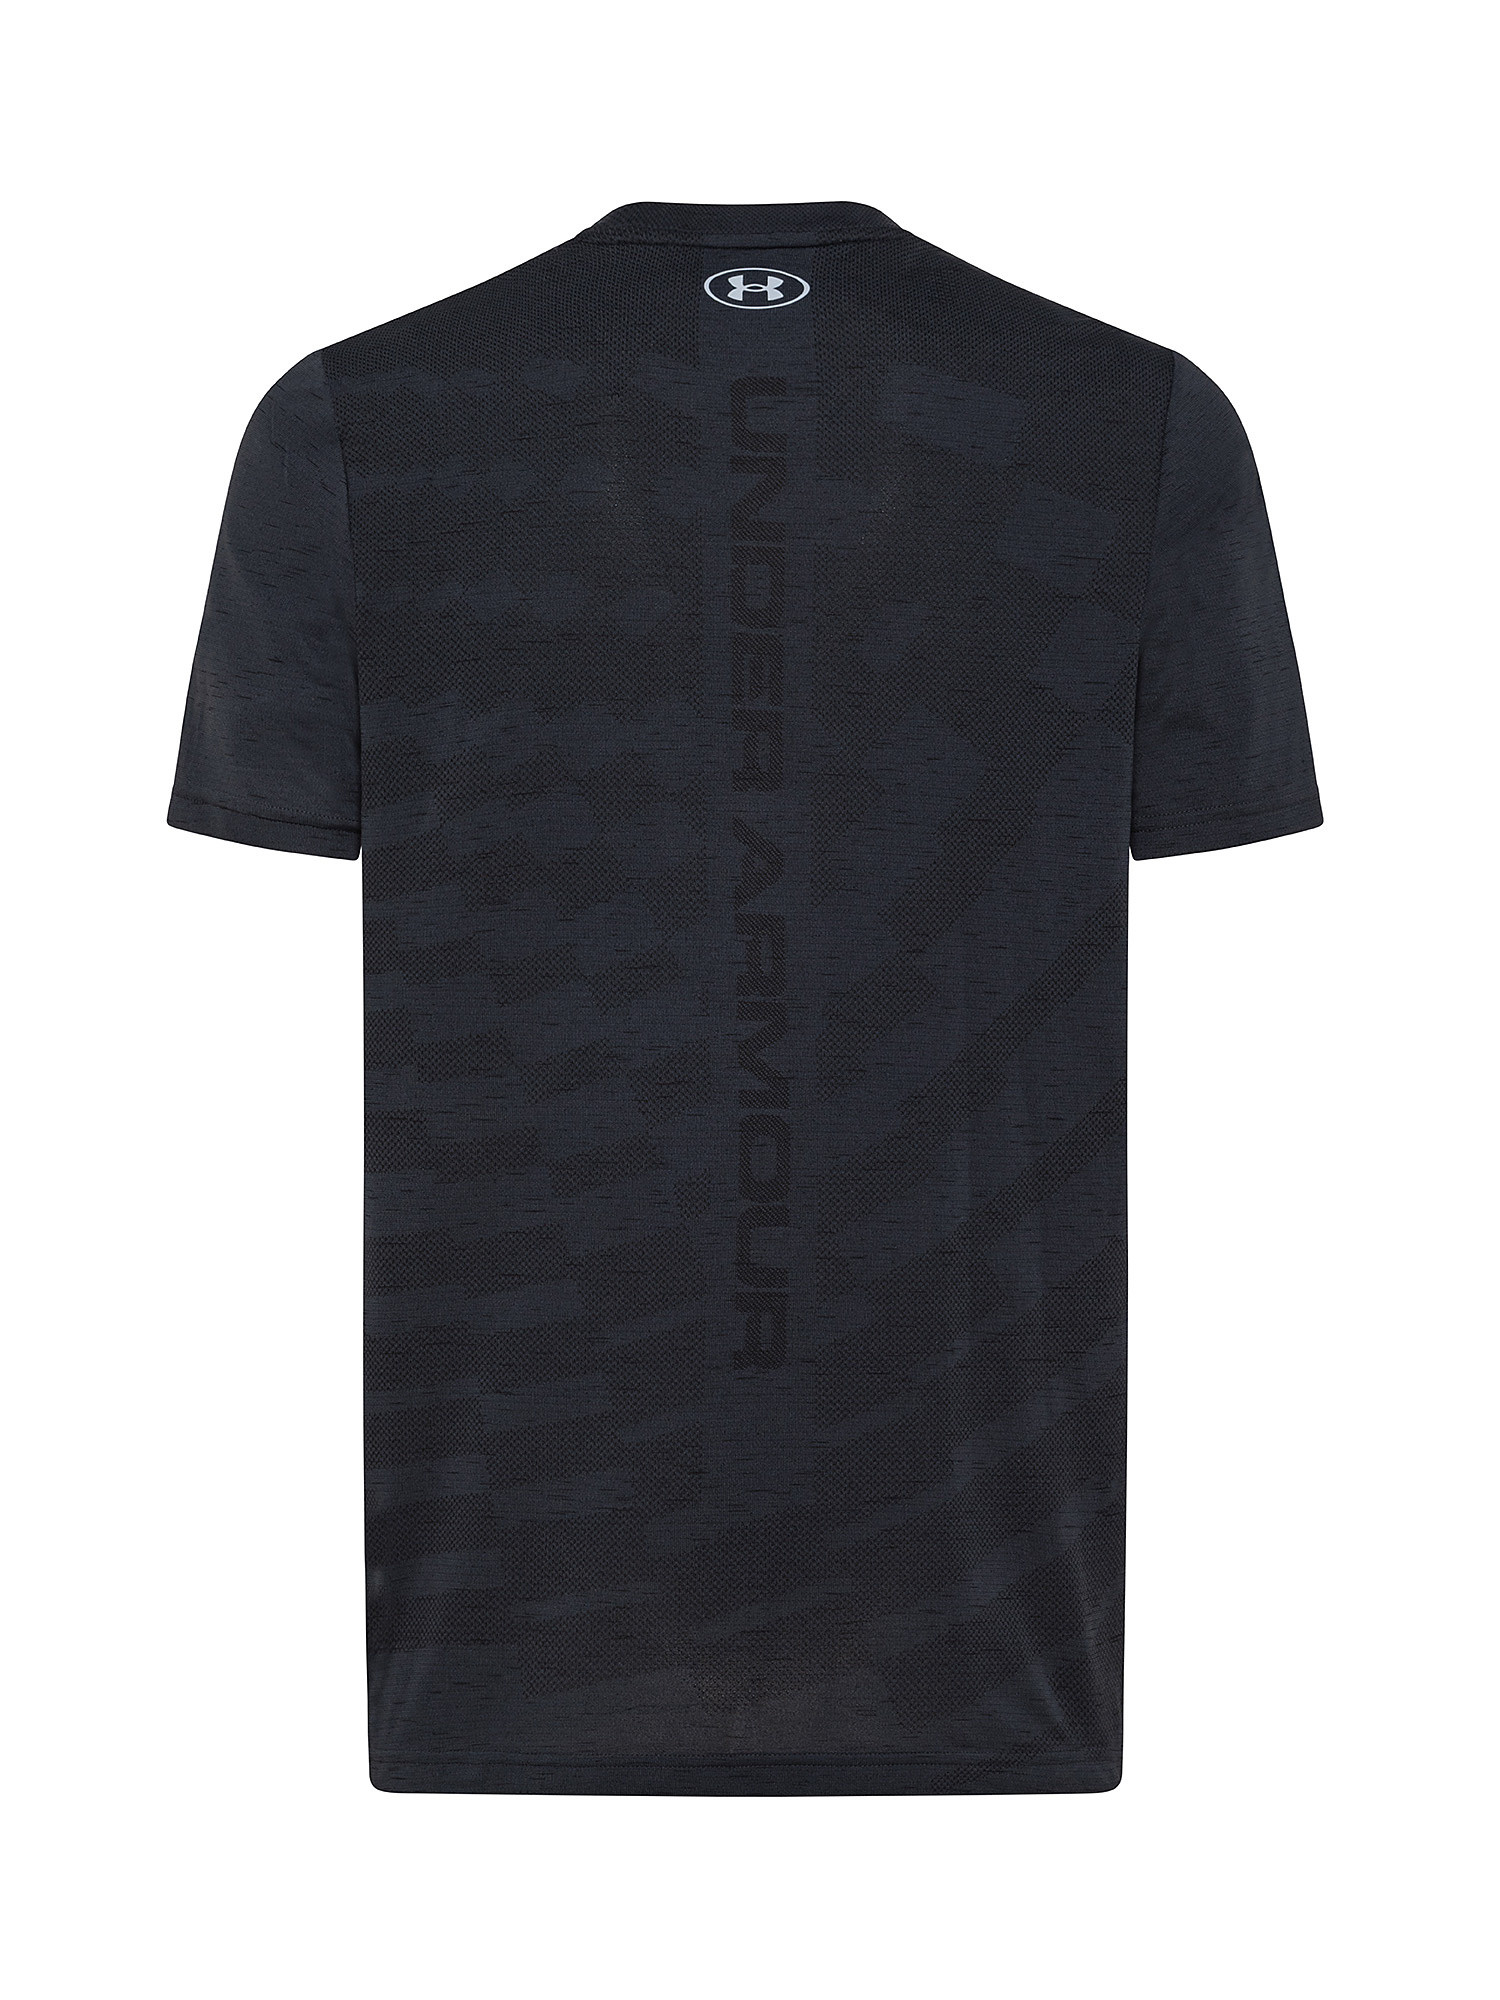 T-shirt in morbido tessuto in maglia con pannelli in mesh tecnico, Nero, large image number 1